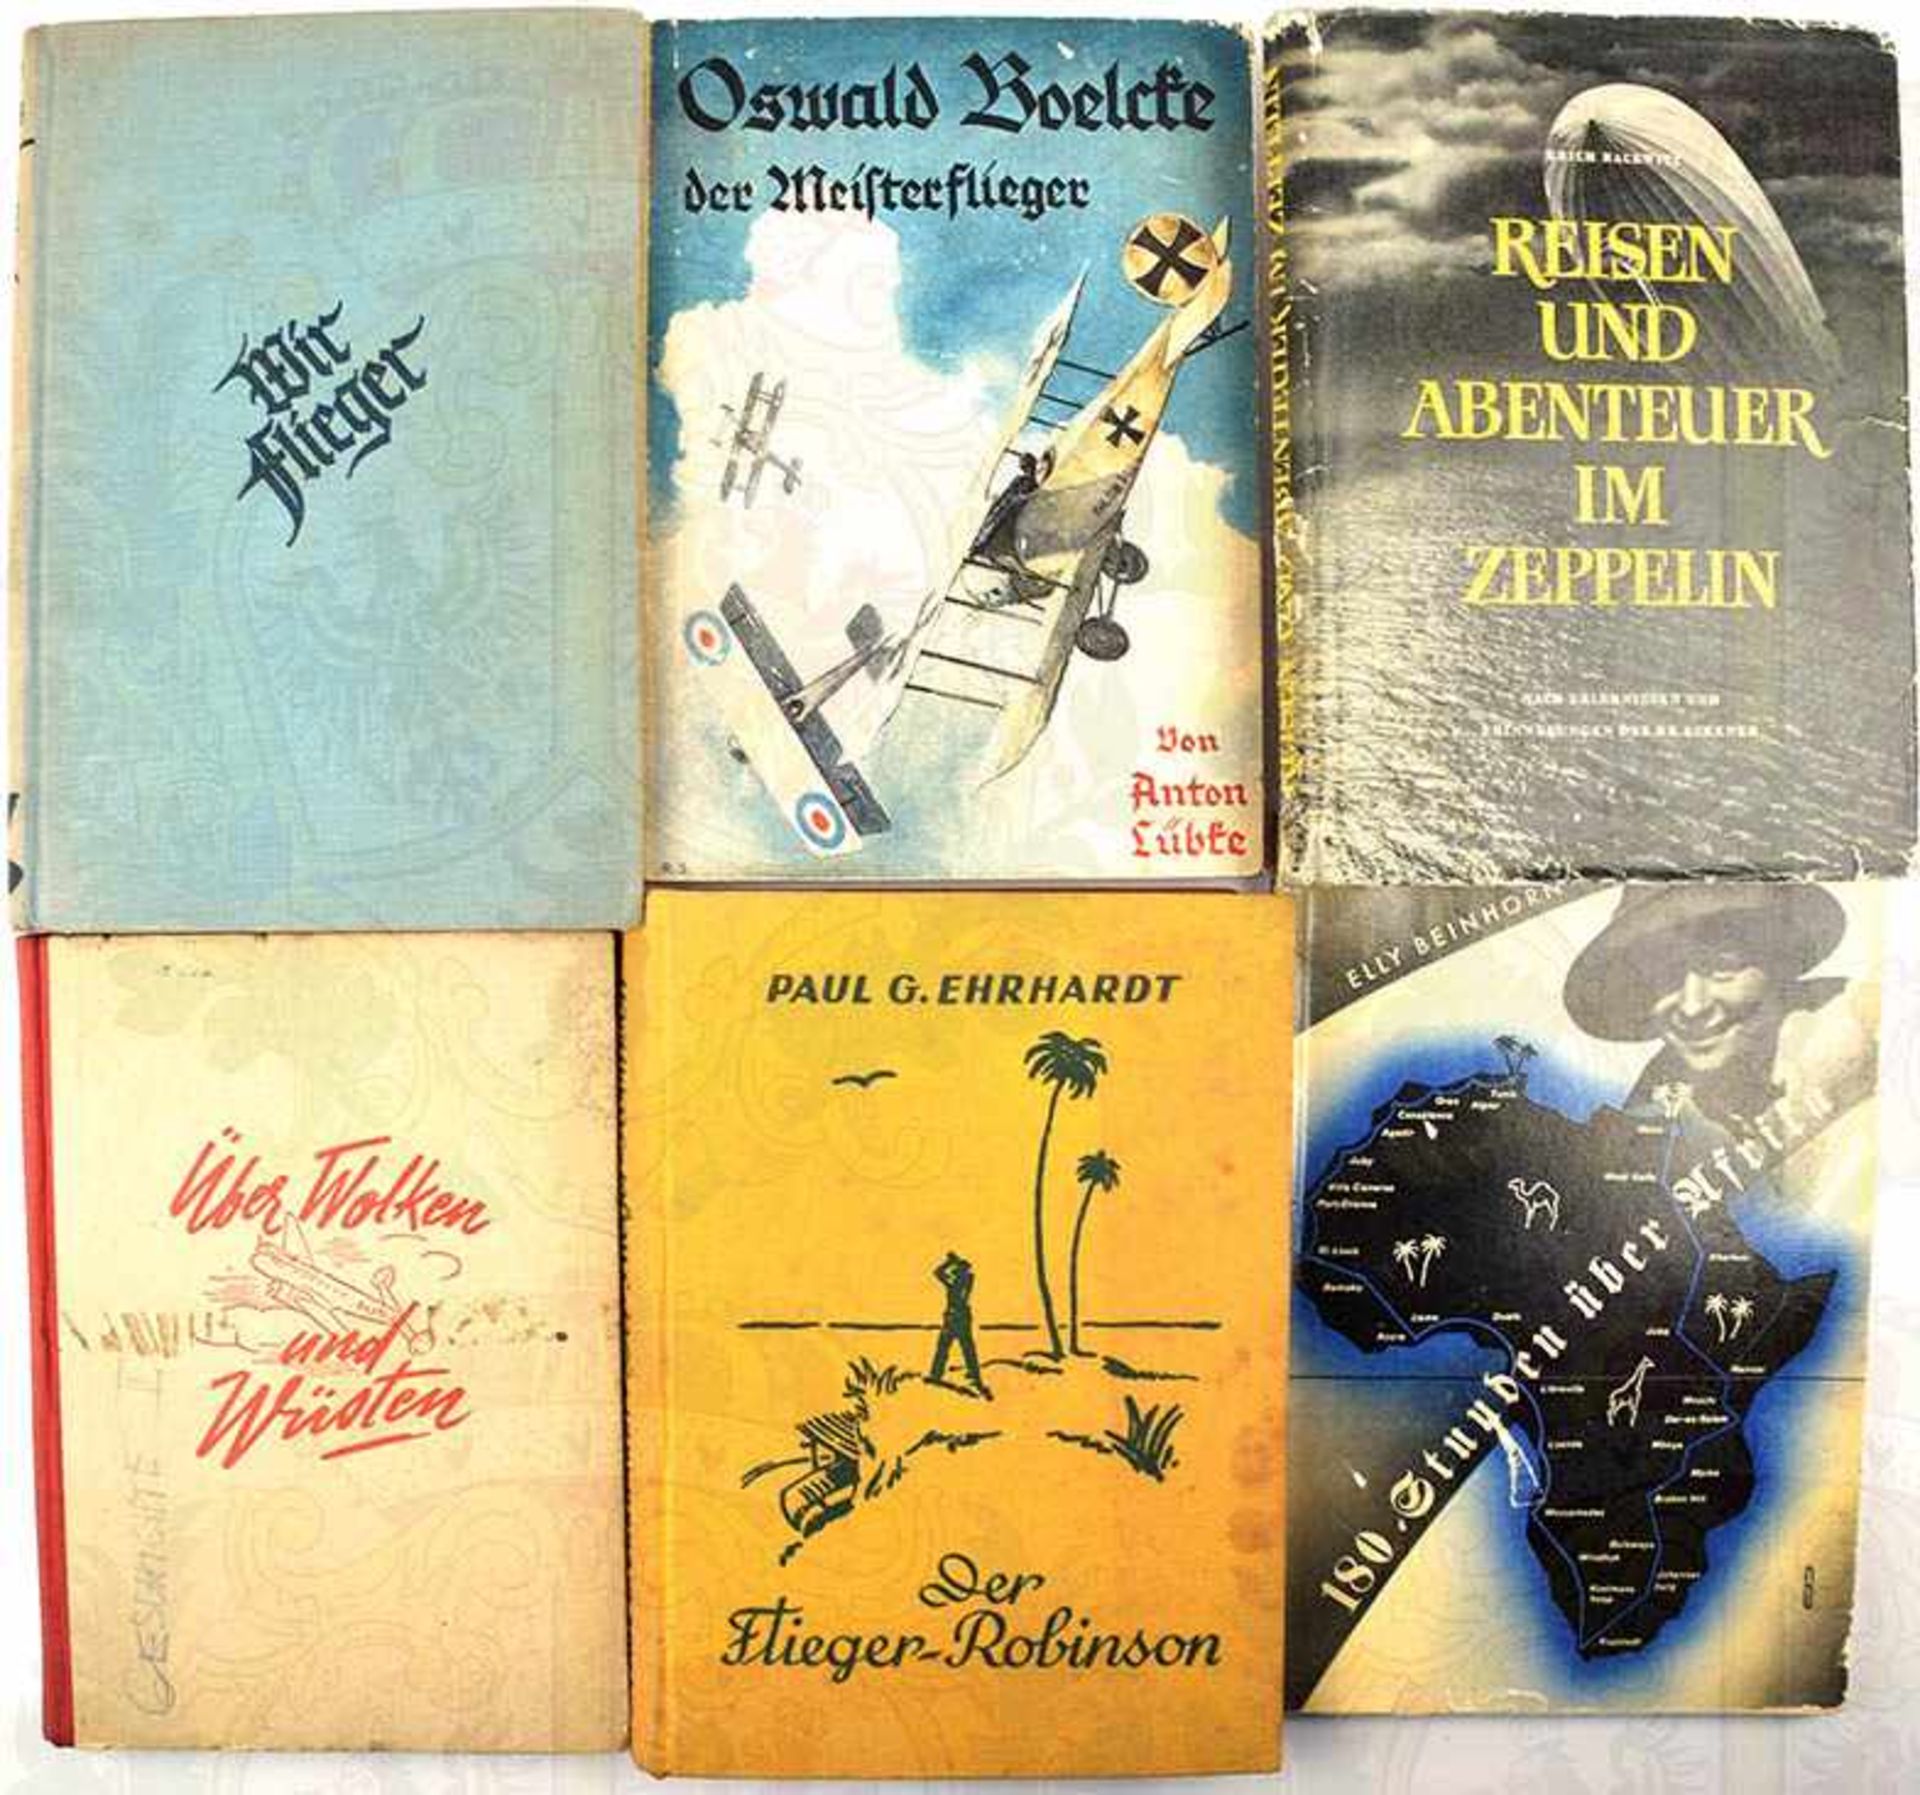 6 TITEL, dabei: Wir Flieger - Kriegserinnerungen; Oswald Boelcke der Meisterflieger; Elly